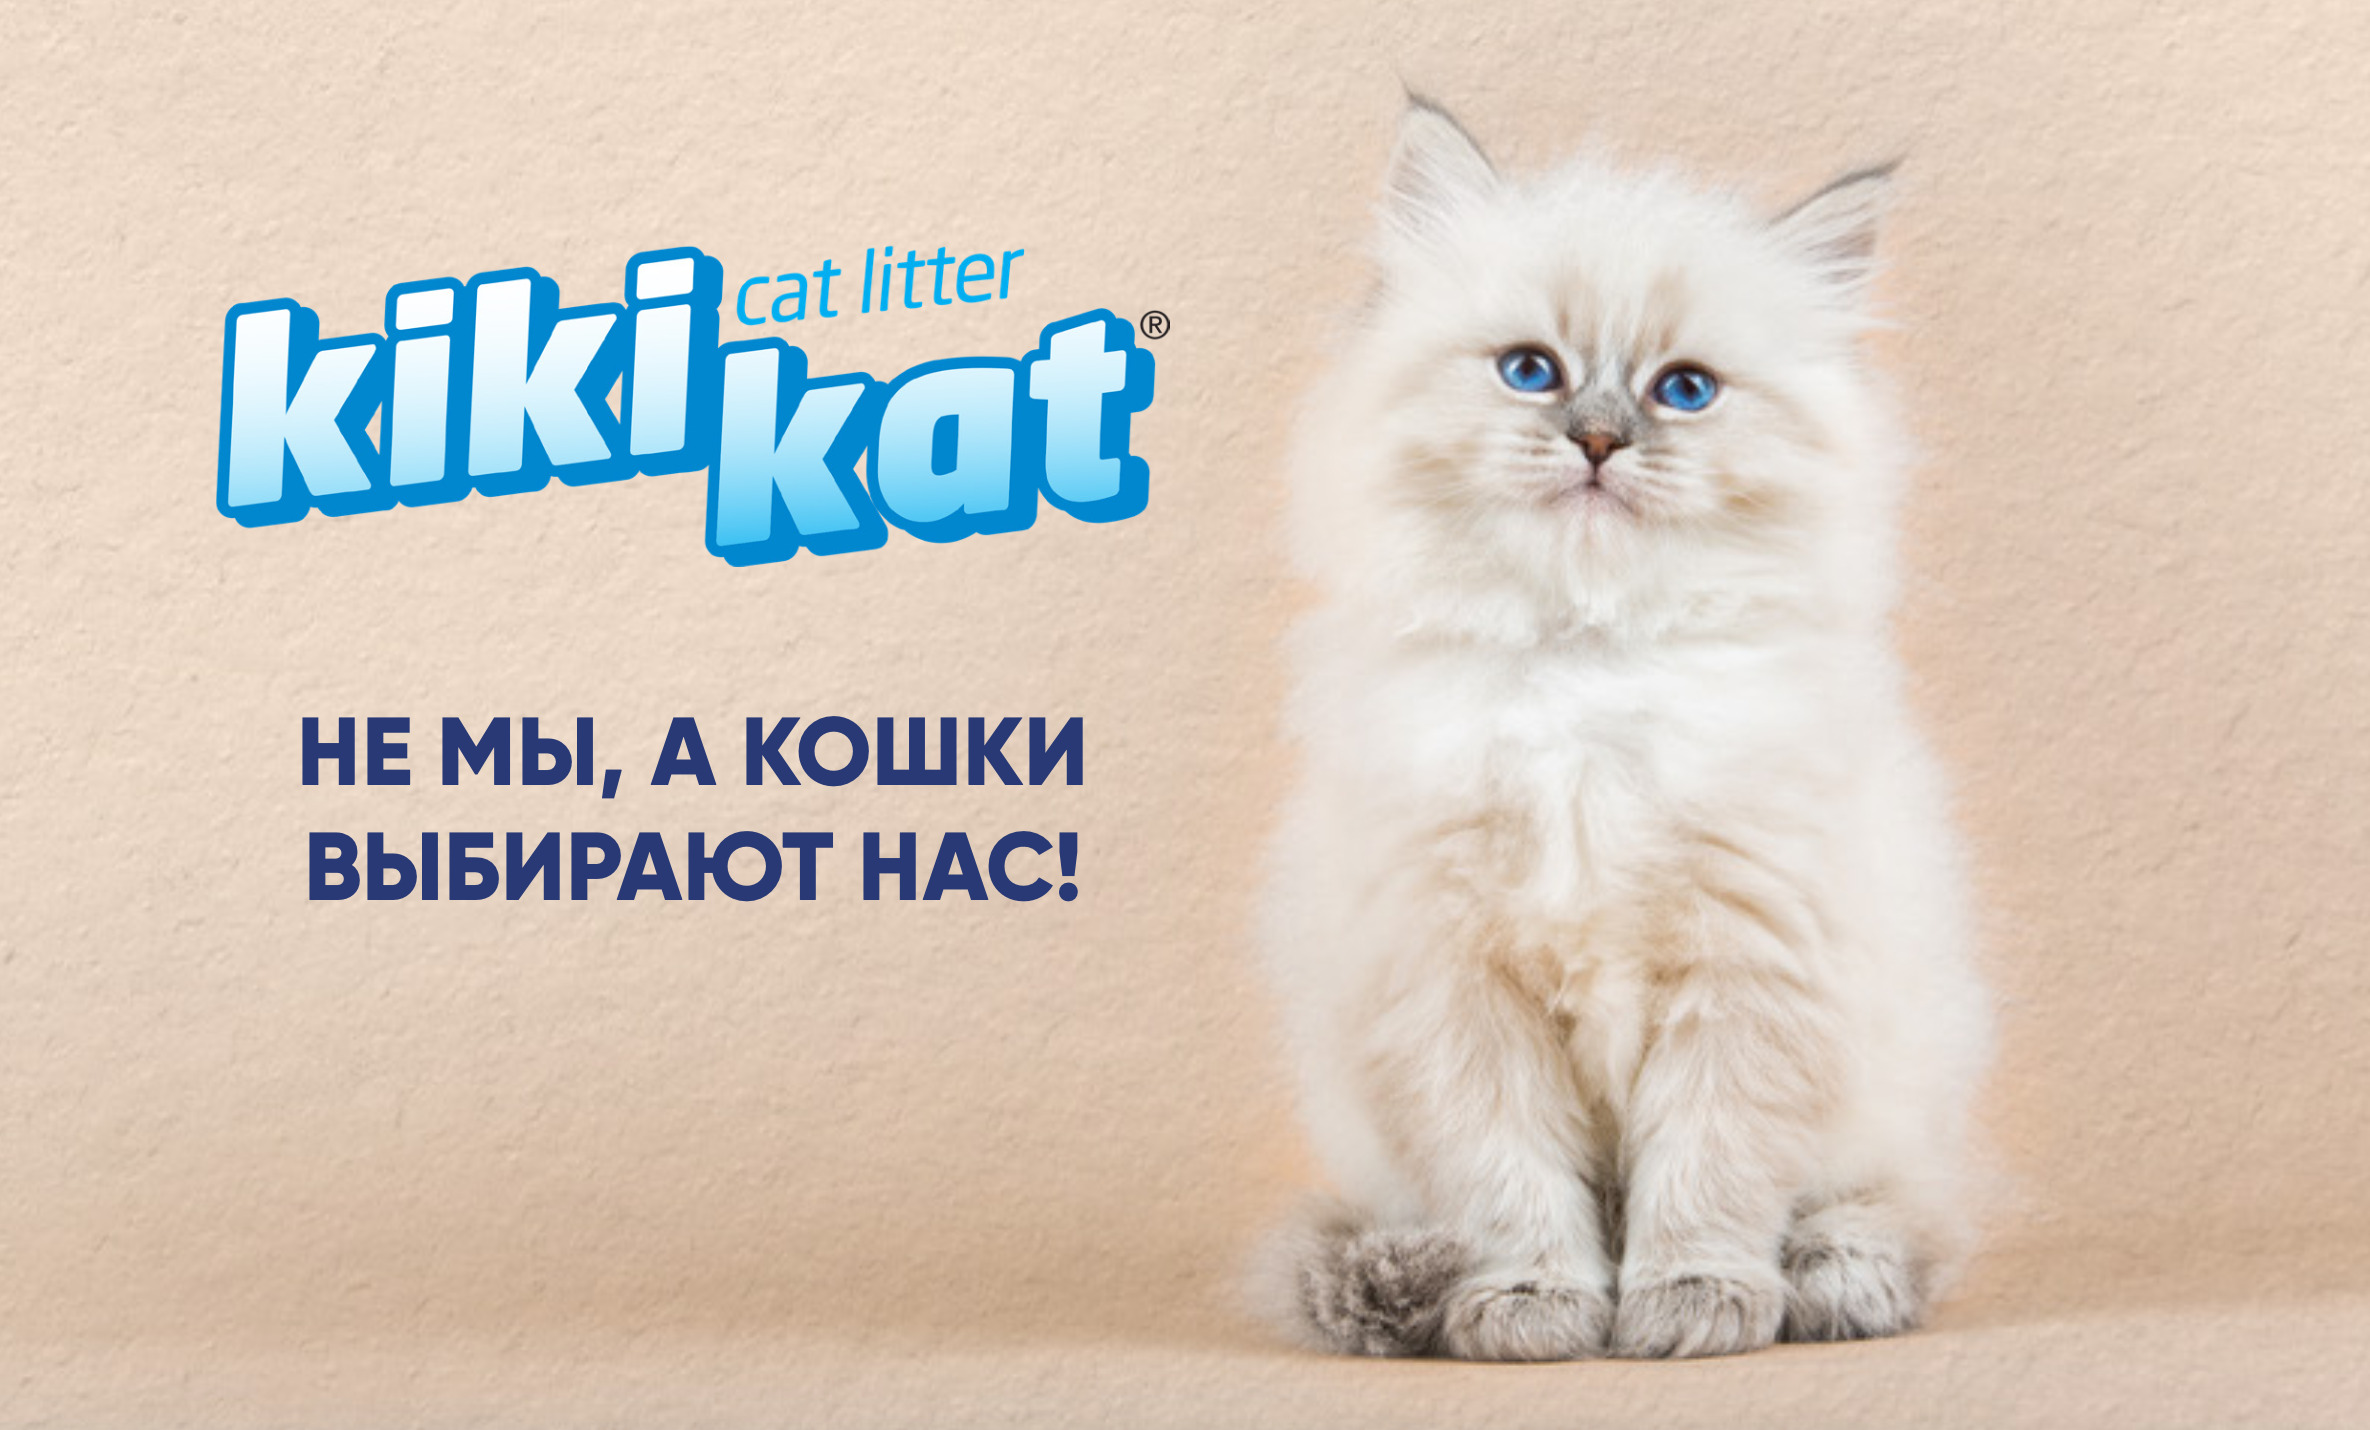 купить Наполнитель для кошачьего туалета KiKiKat с бесплатной доставкой в Калининграде